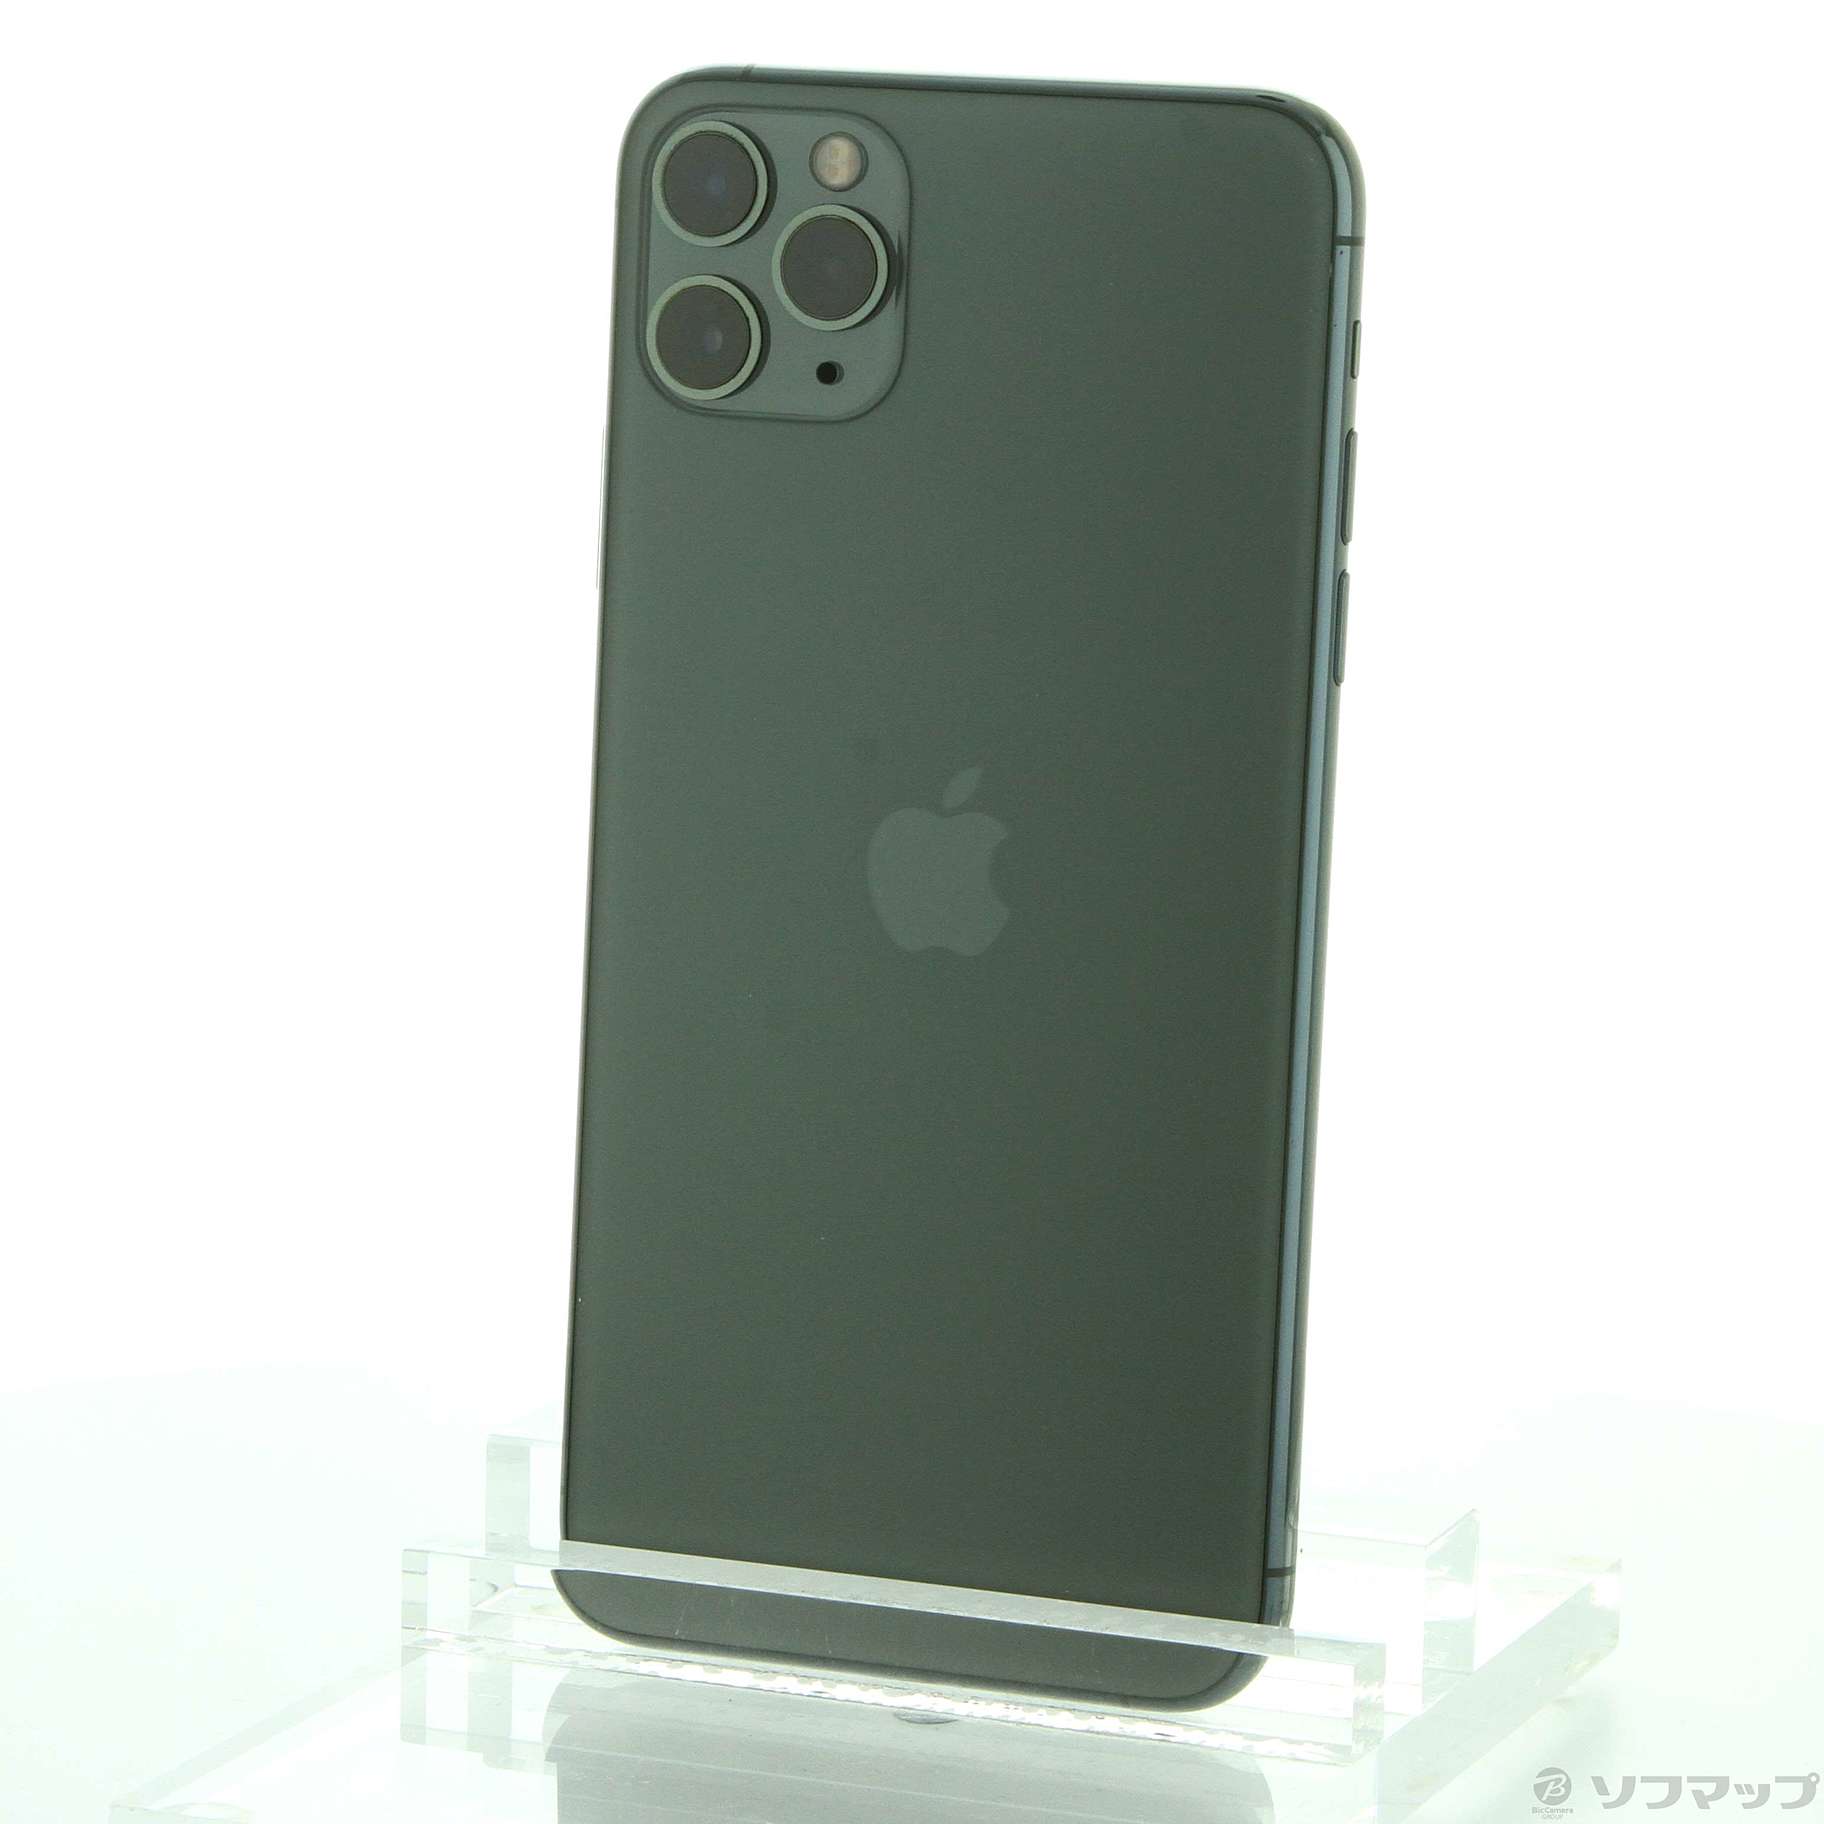 iPhone11 pro max 512GB simフリー ミッドナイトグリーン